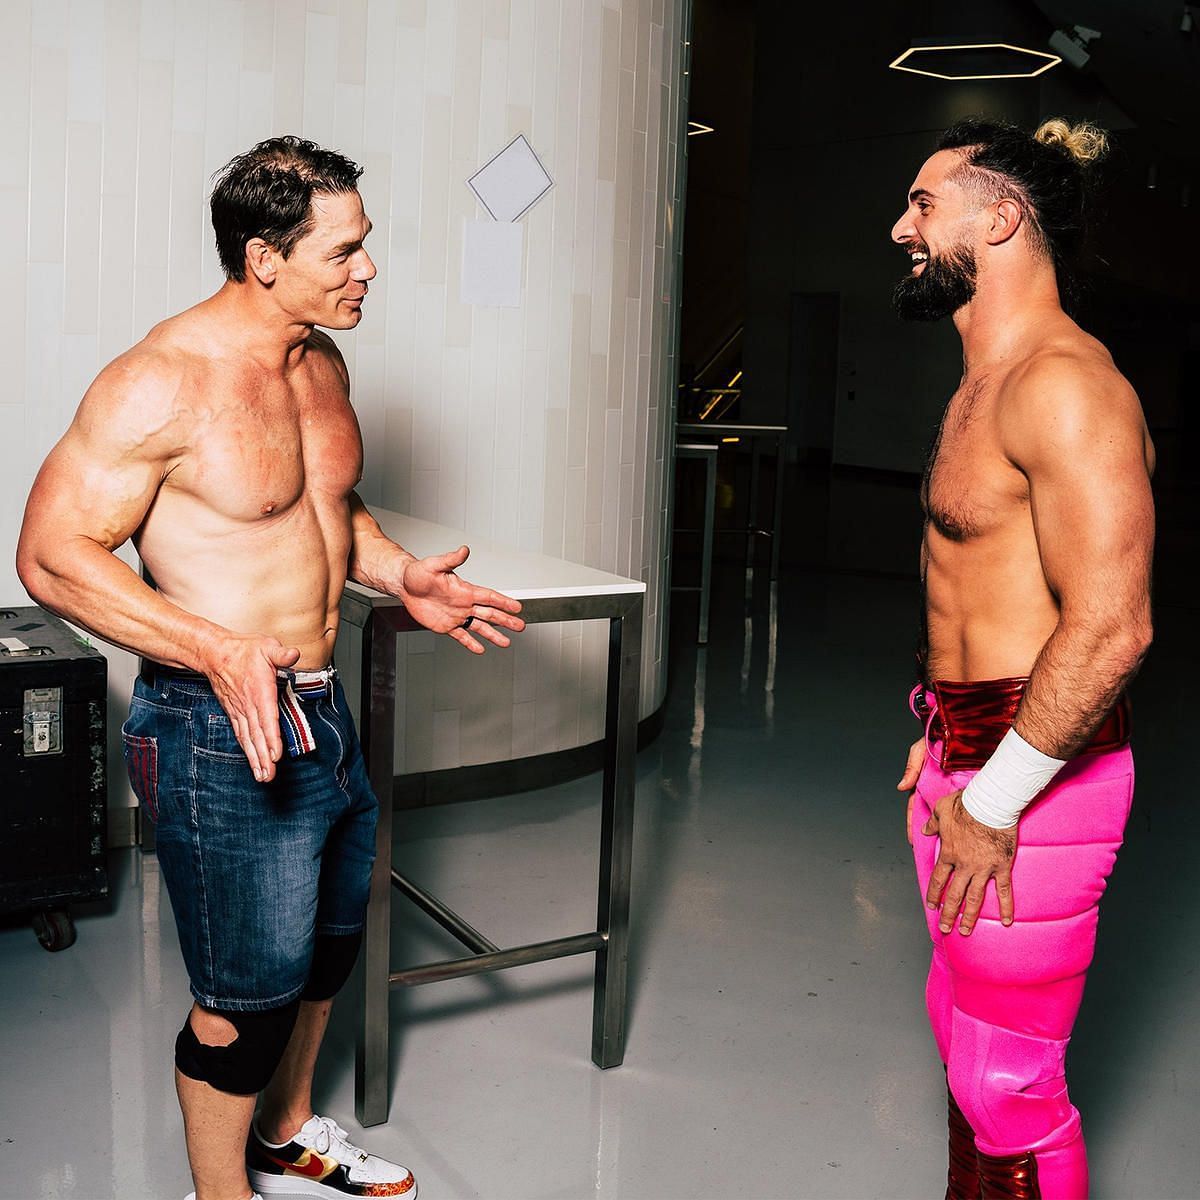 WWE में जॉन सीना और सैथ रॉलिंस के बीच यादगार दुश्मनी देखने को मिली है